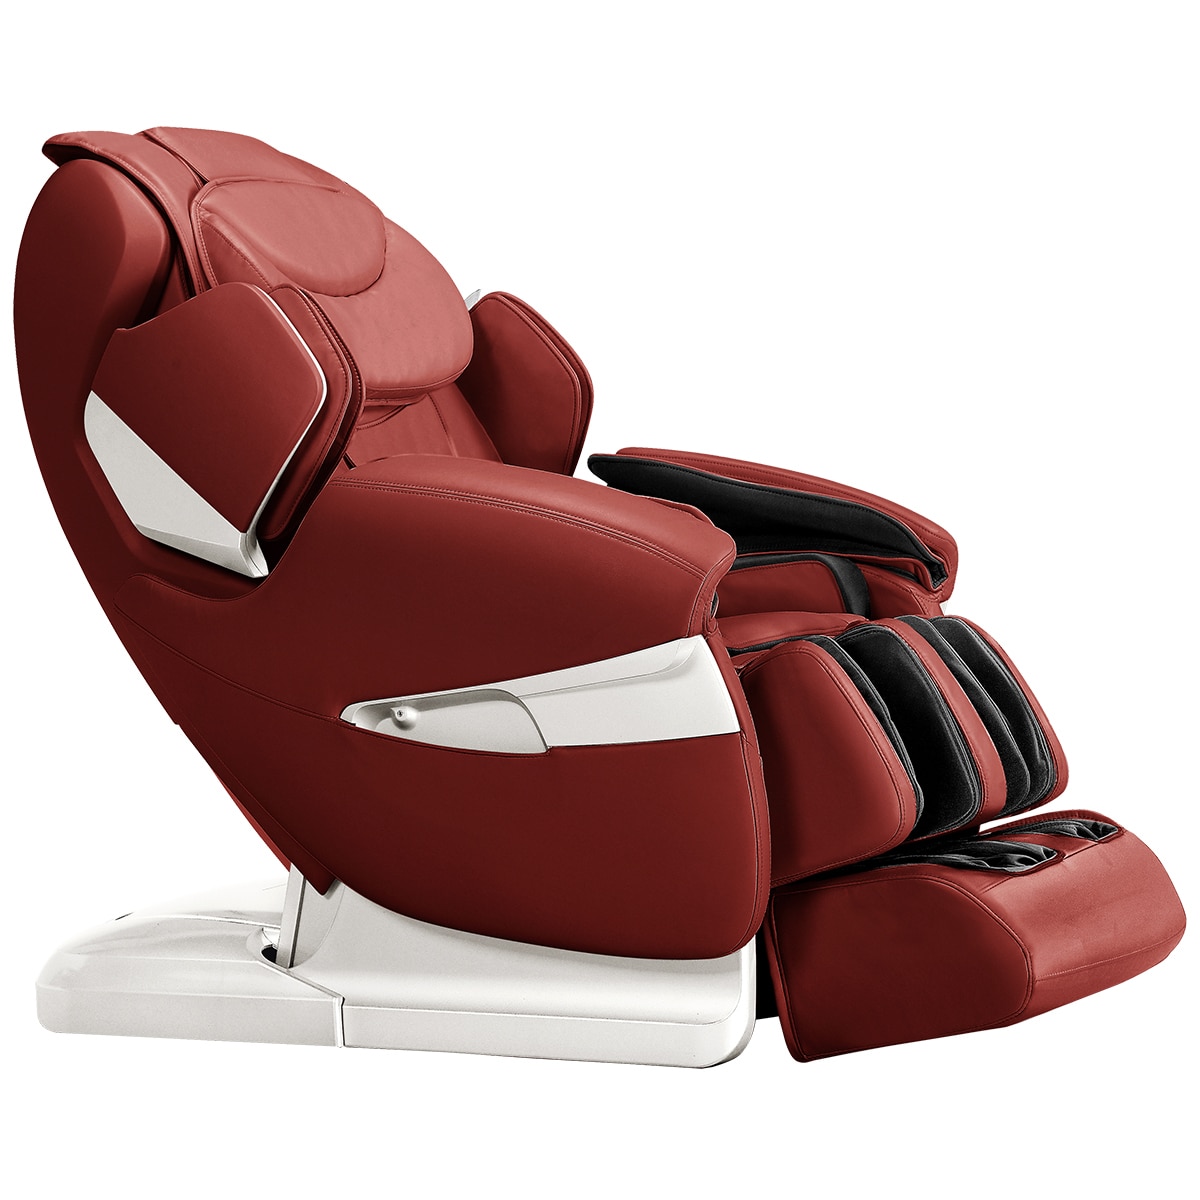 Platinum Massage Chair Costco Australia